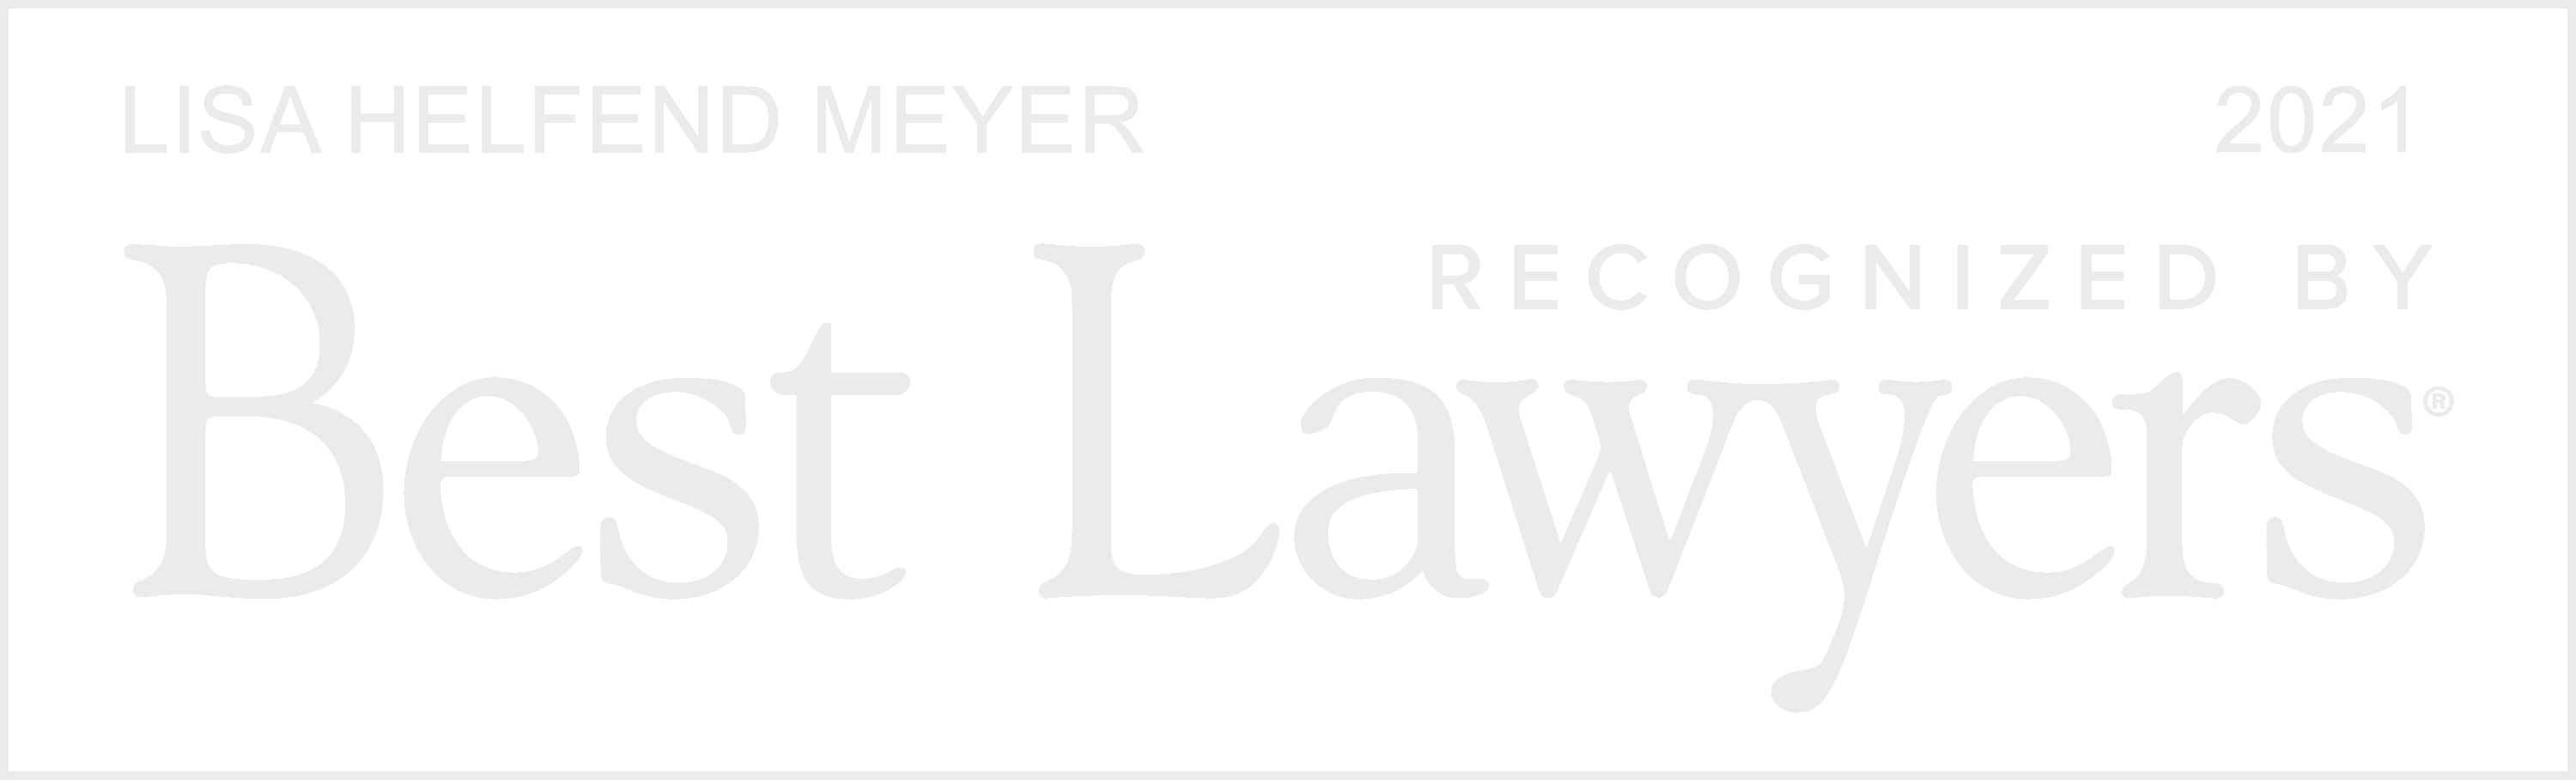 logo-best-lawyers-lawyer